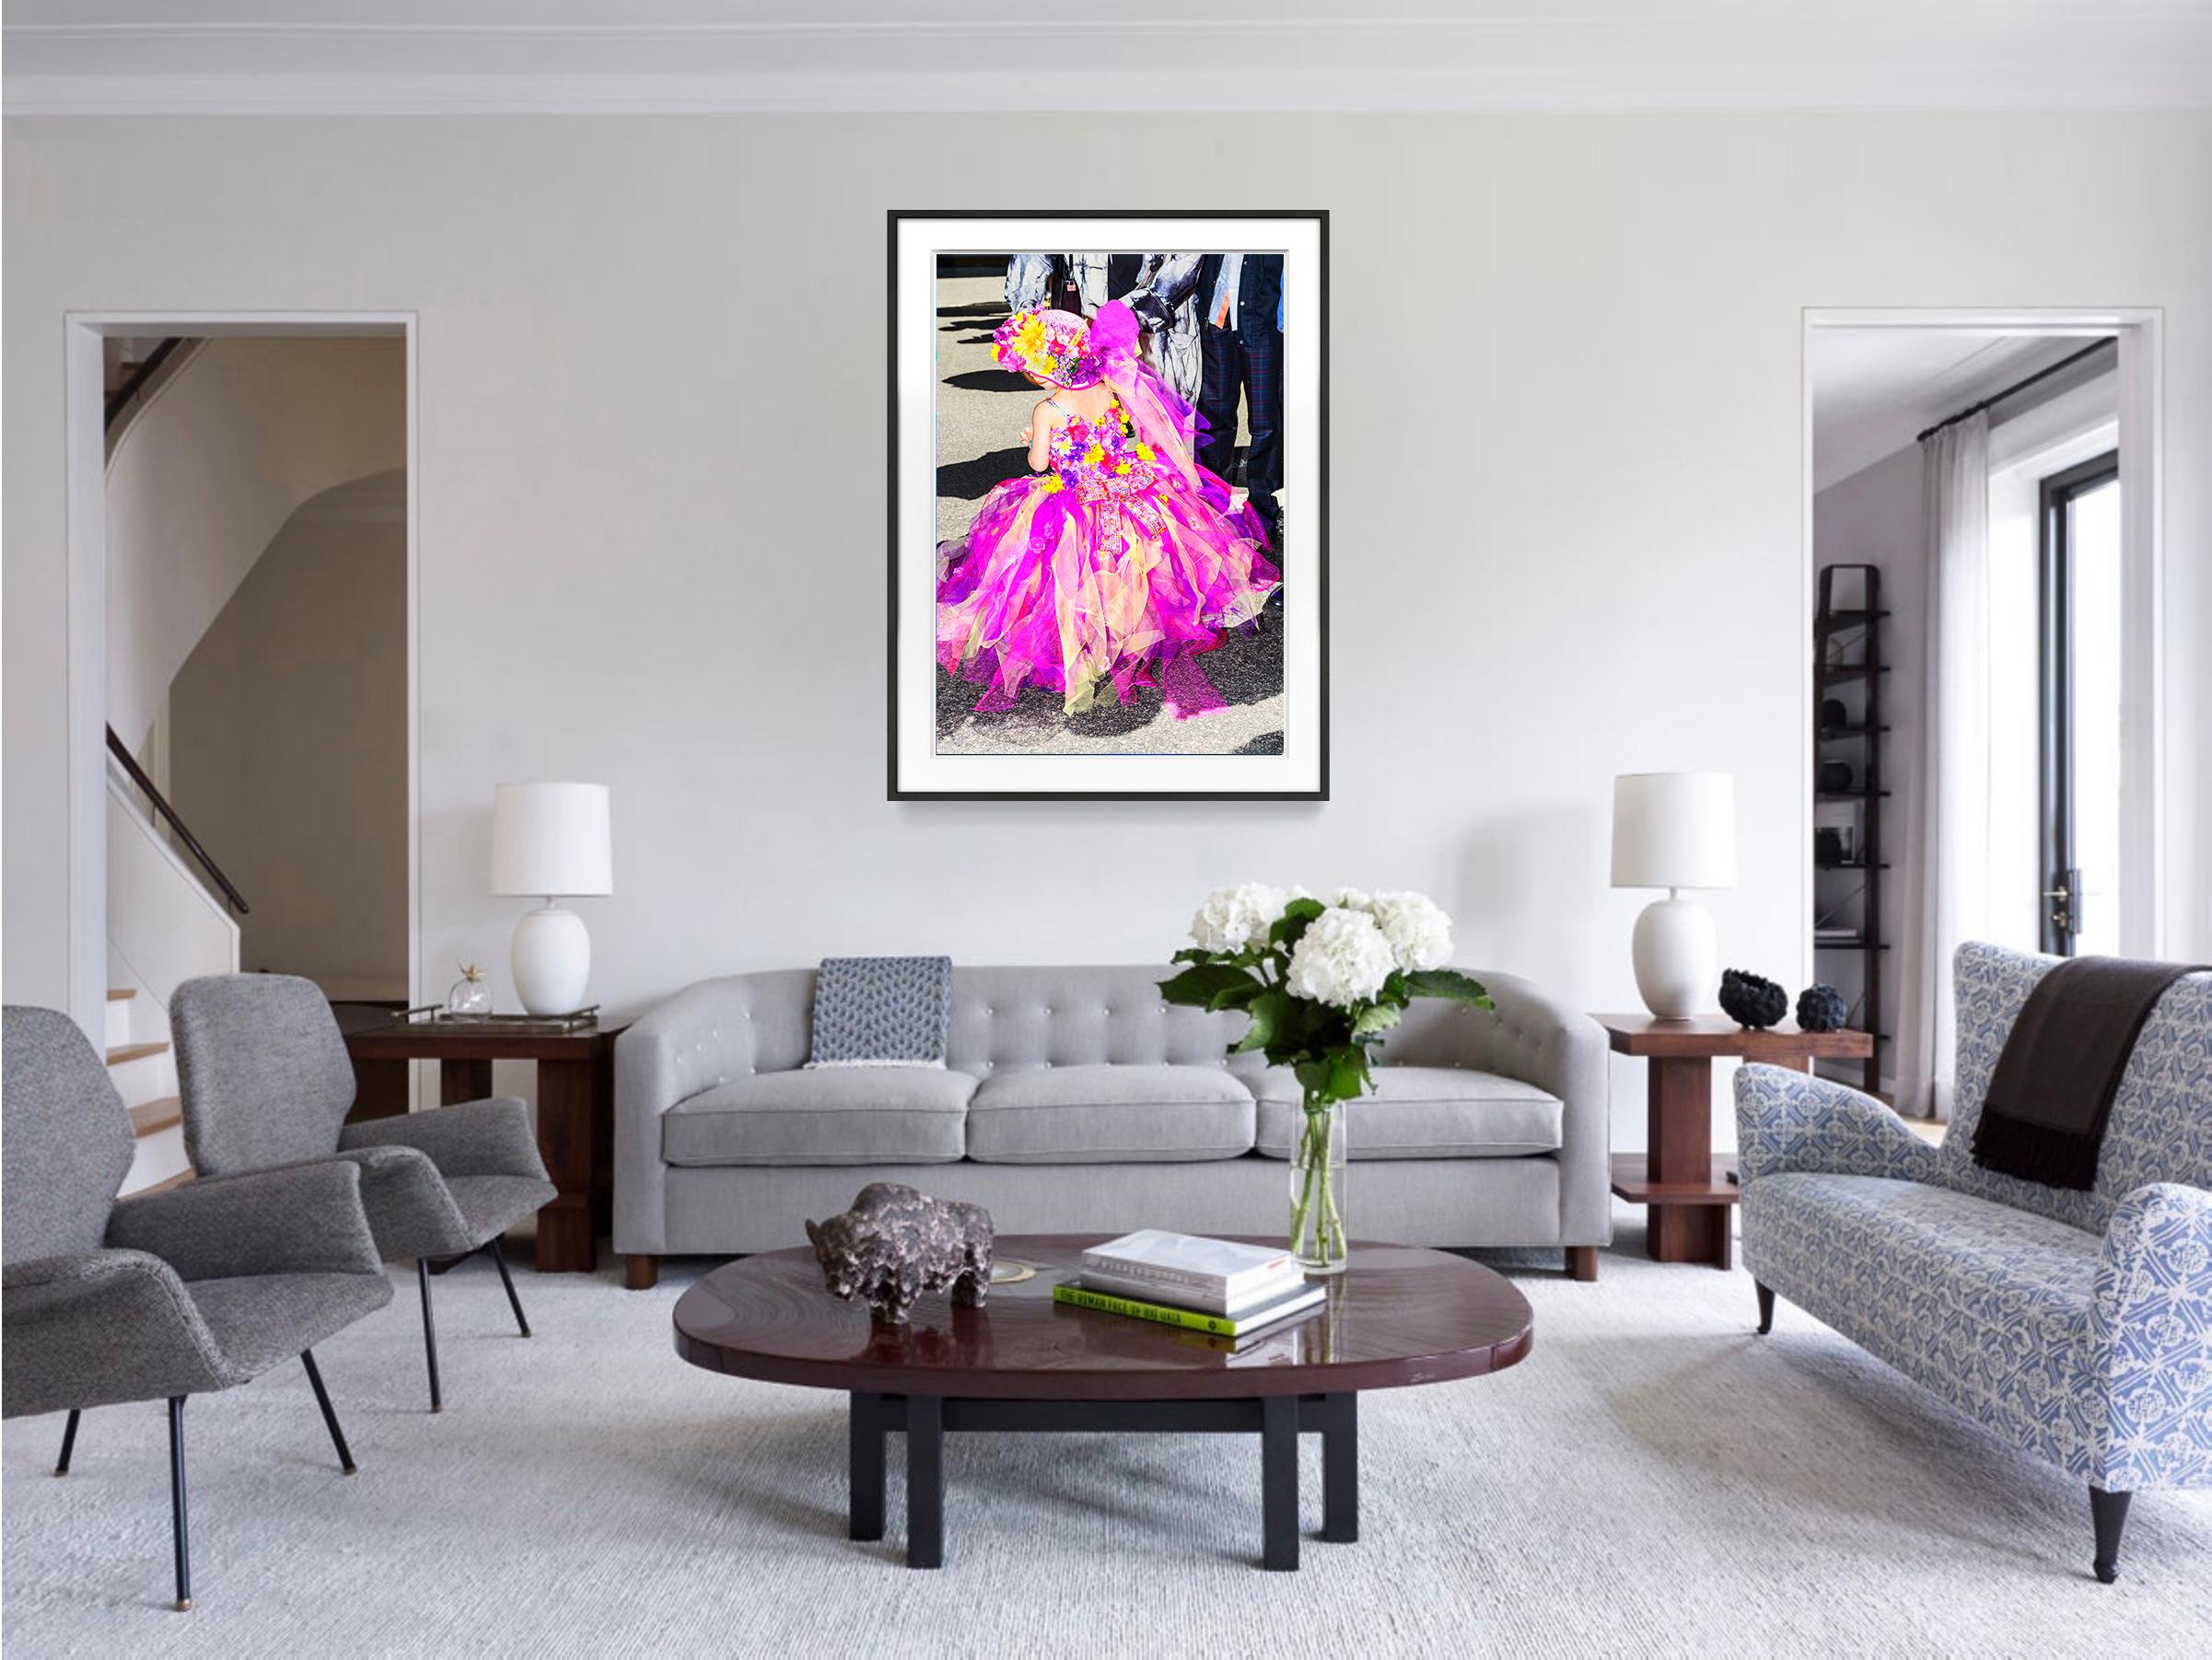 Junges Mädchen in einem rosa Couture-Kleid,  Modefotografie  (Geometrische Abstraktion), Photograph, von Mitchell Funk